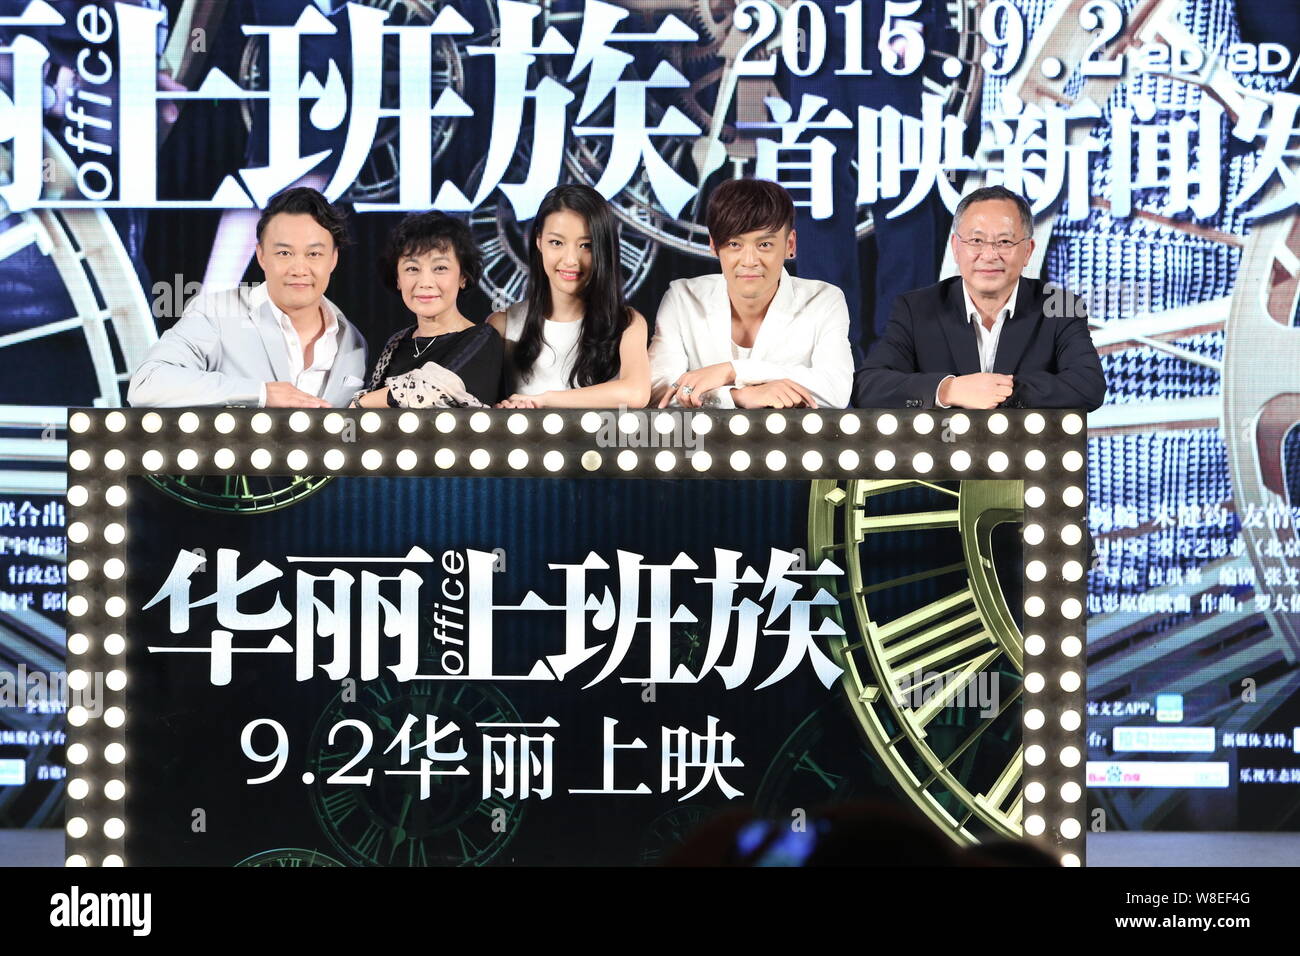 (From left) Hong Kong singer and actor Eason Chan, Taiwanese actress Sylvia Chang, Chinese actress Lang Yueting, actor Wang Ziyi and Hong Kong directo Stock Photo